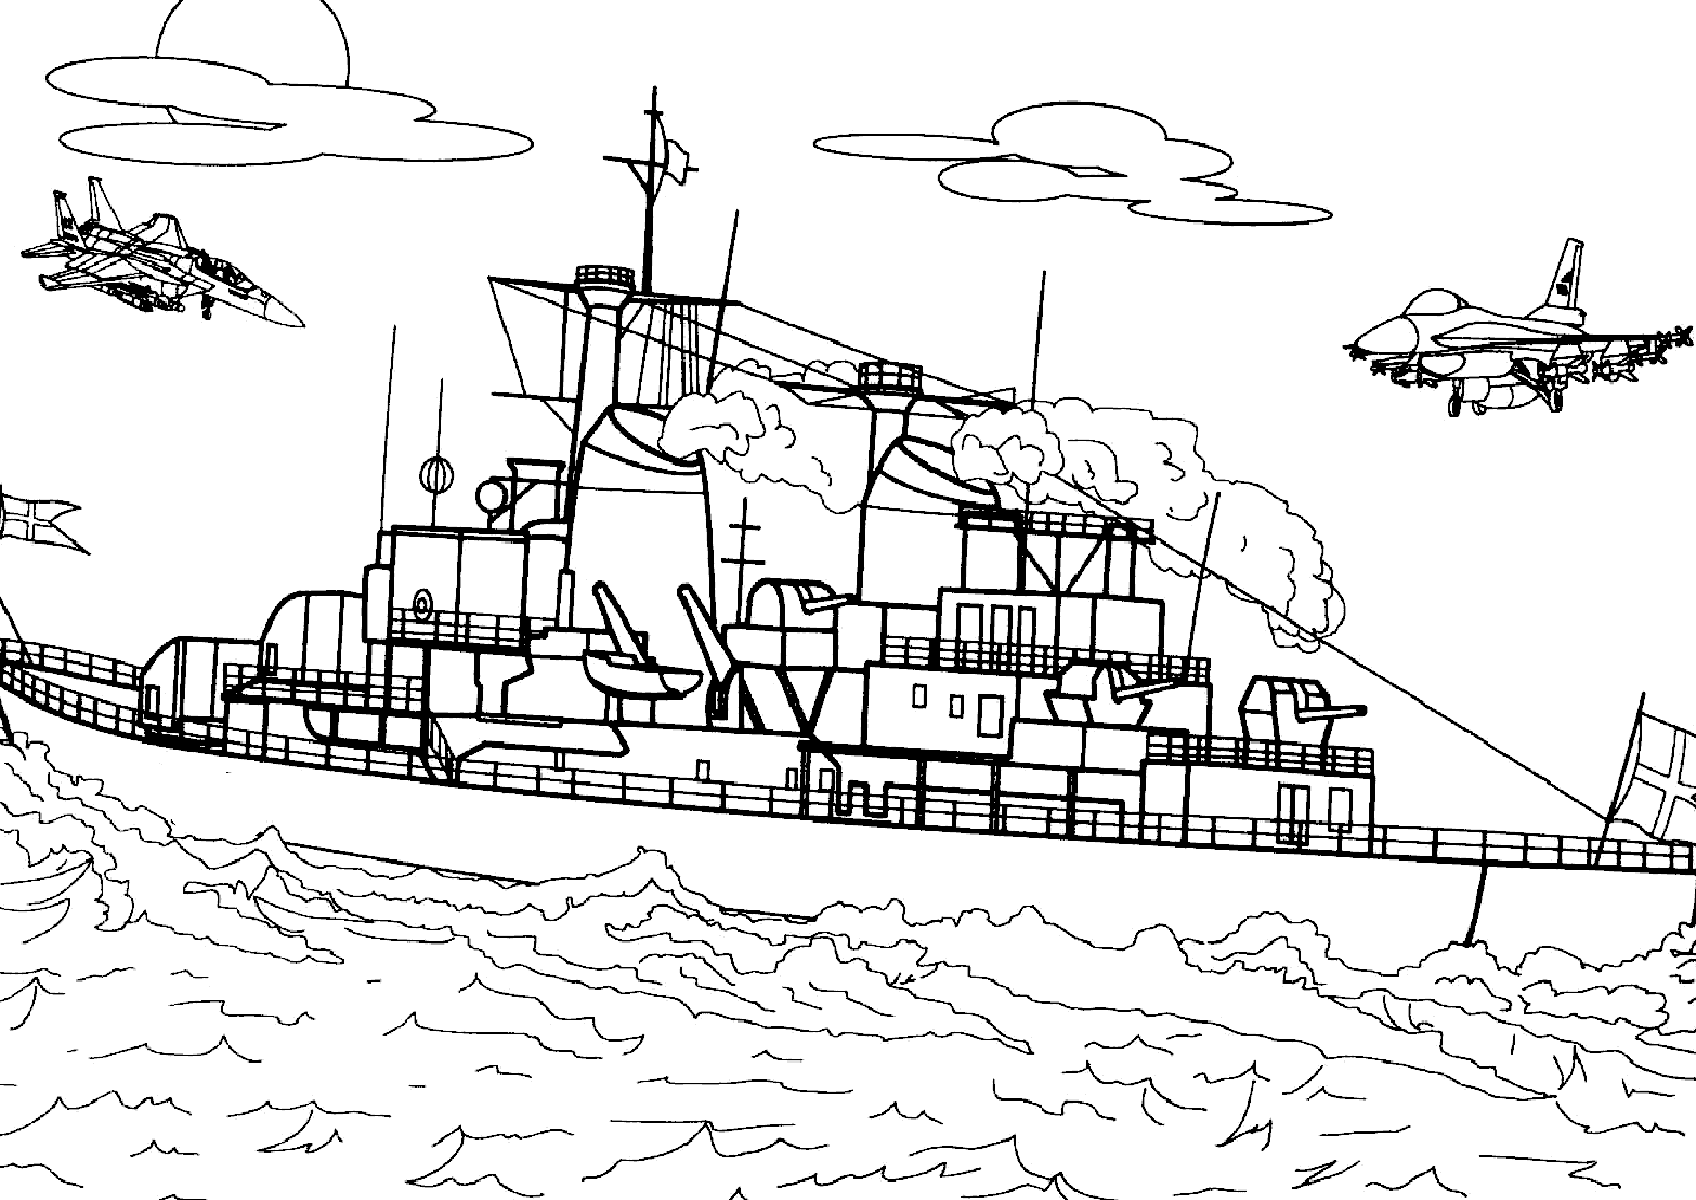 Ёольшой военный корабль и истребители